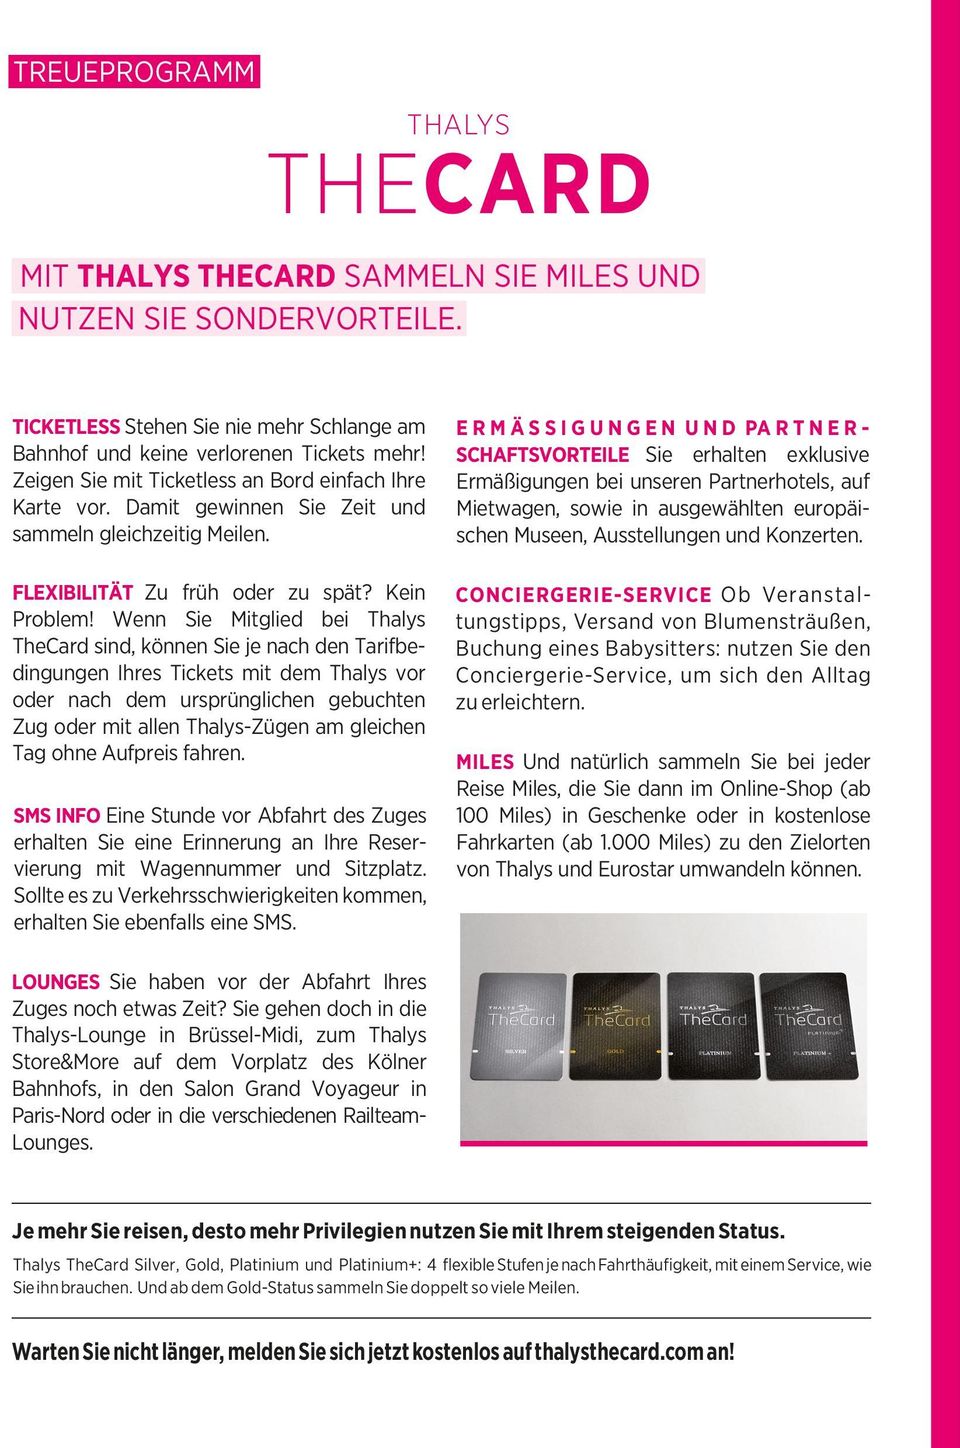 Wenn Sie Mitglied bei Thalys TheCard sind, können Sie je nach den Tarifbedingungen Ihres Tickets mit dem Thalys vor oder nach dem ursprünglichen gebuchten Zug oder mit allen Thalys-Zügen am gleichen